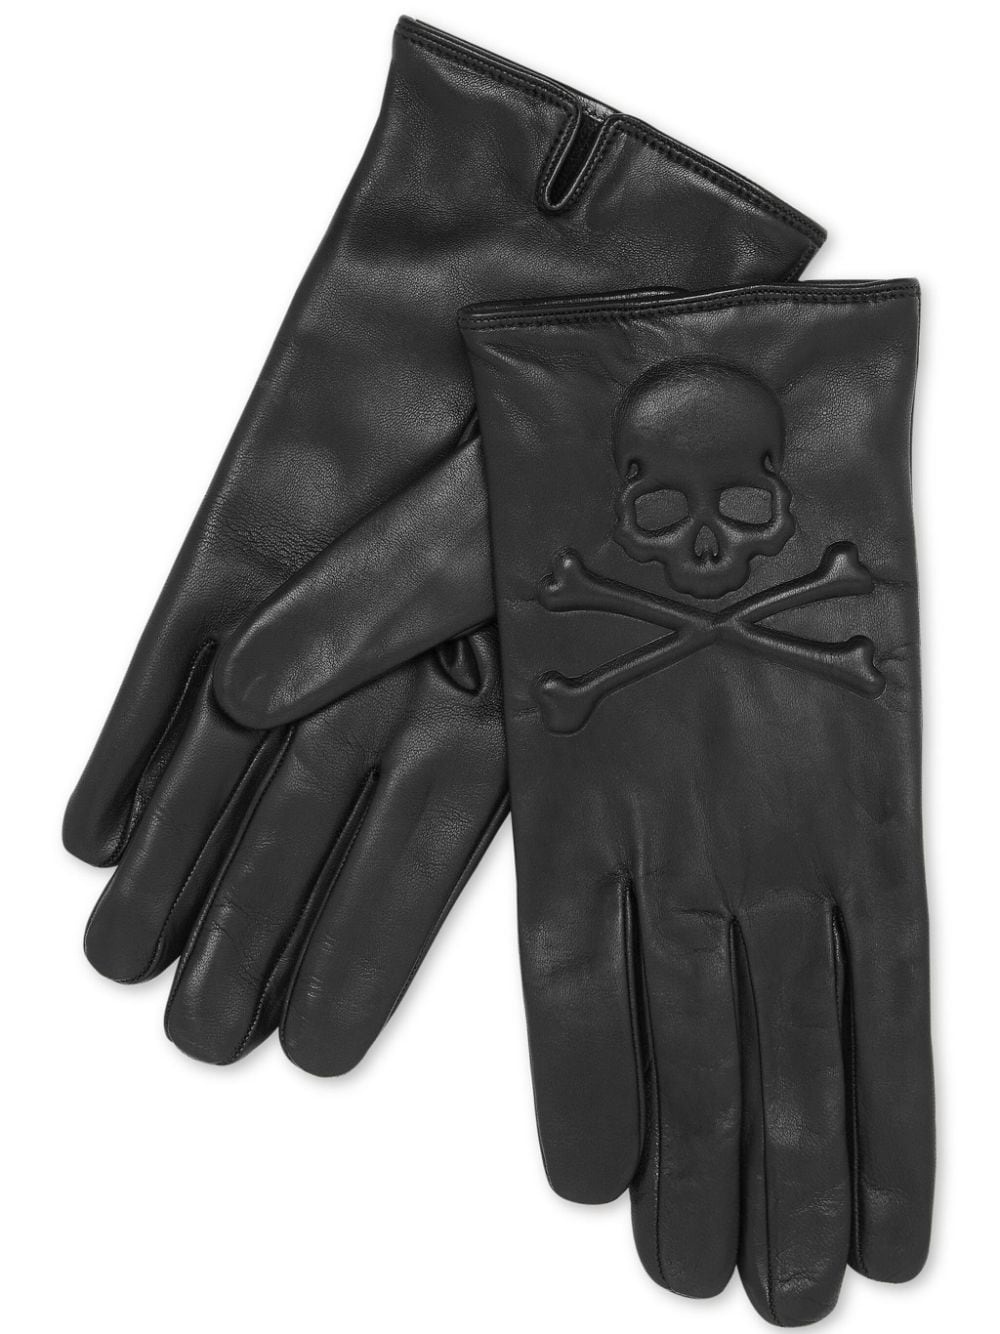 Skull&Bones leather gloves - 1